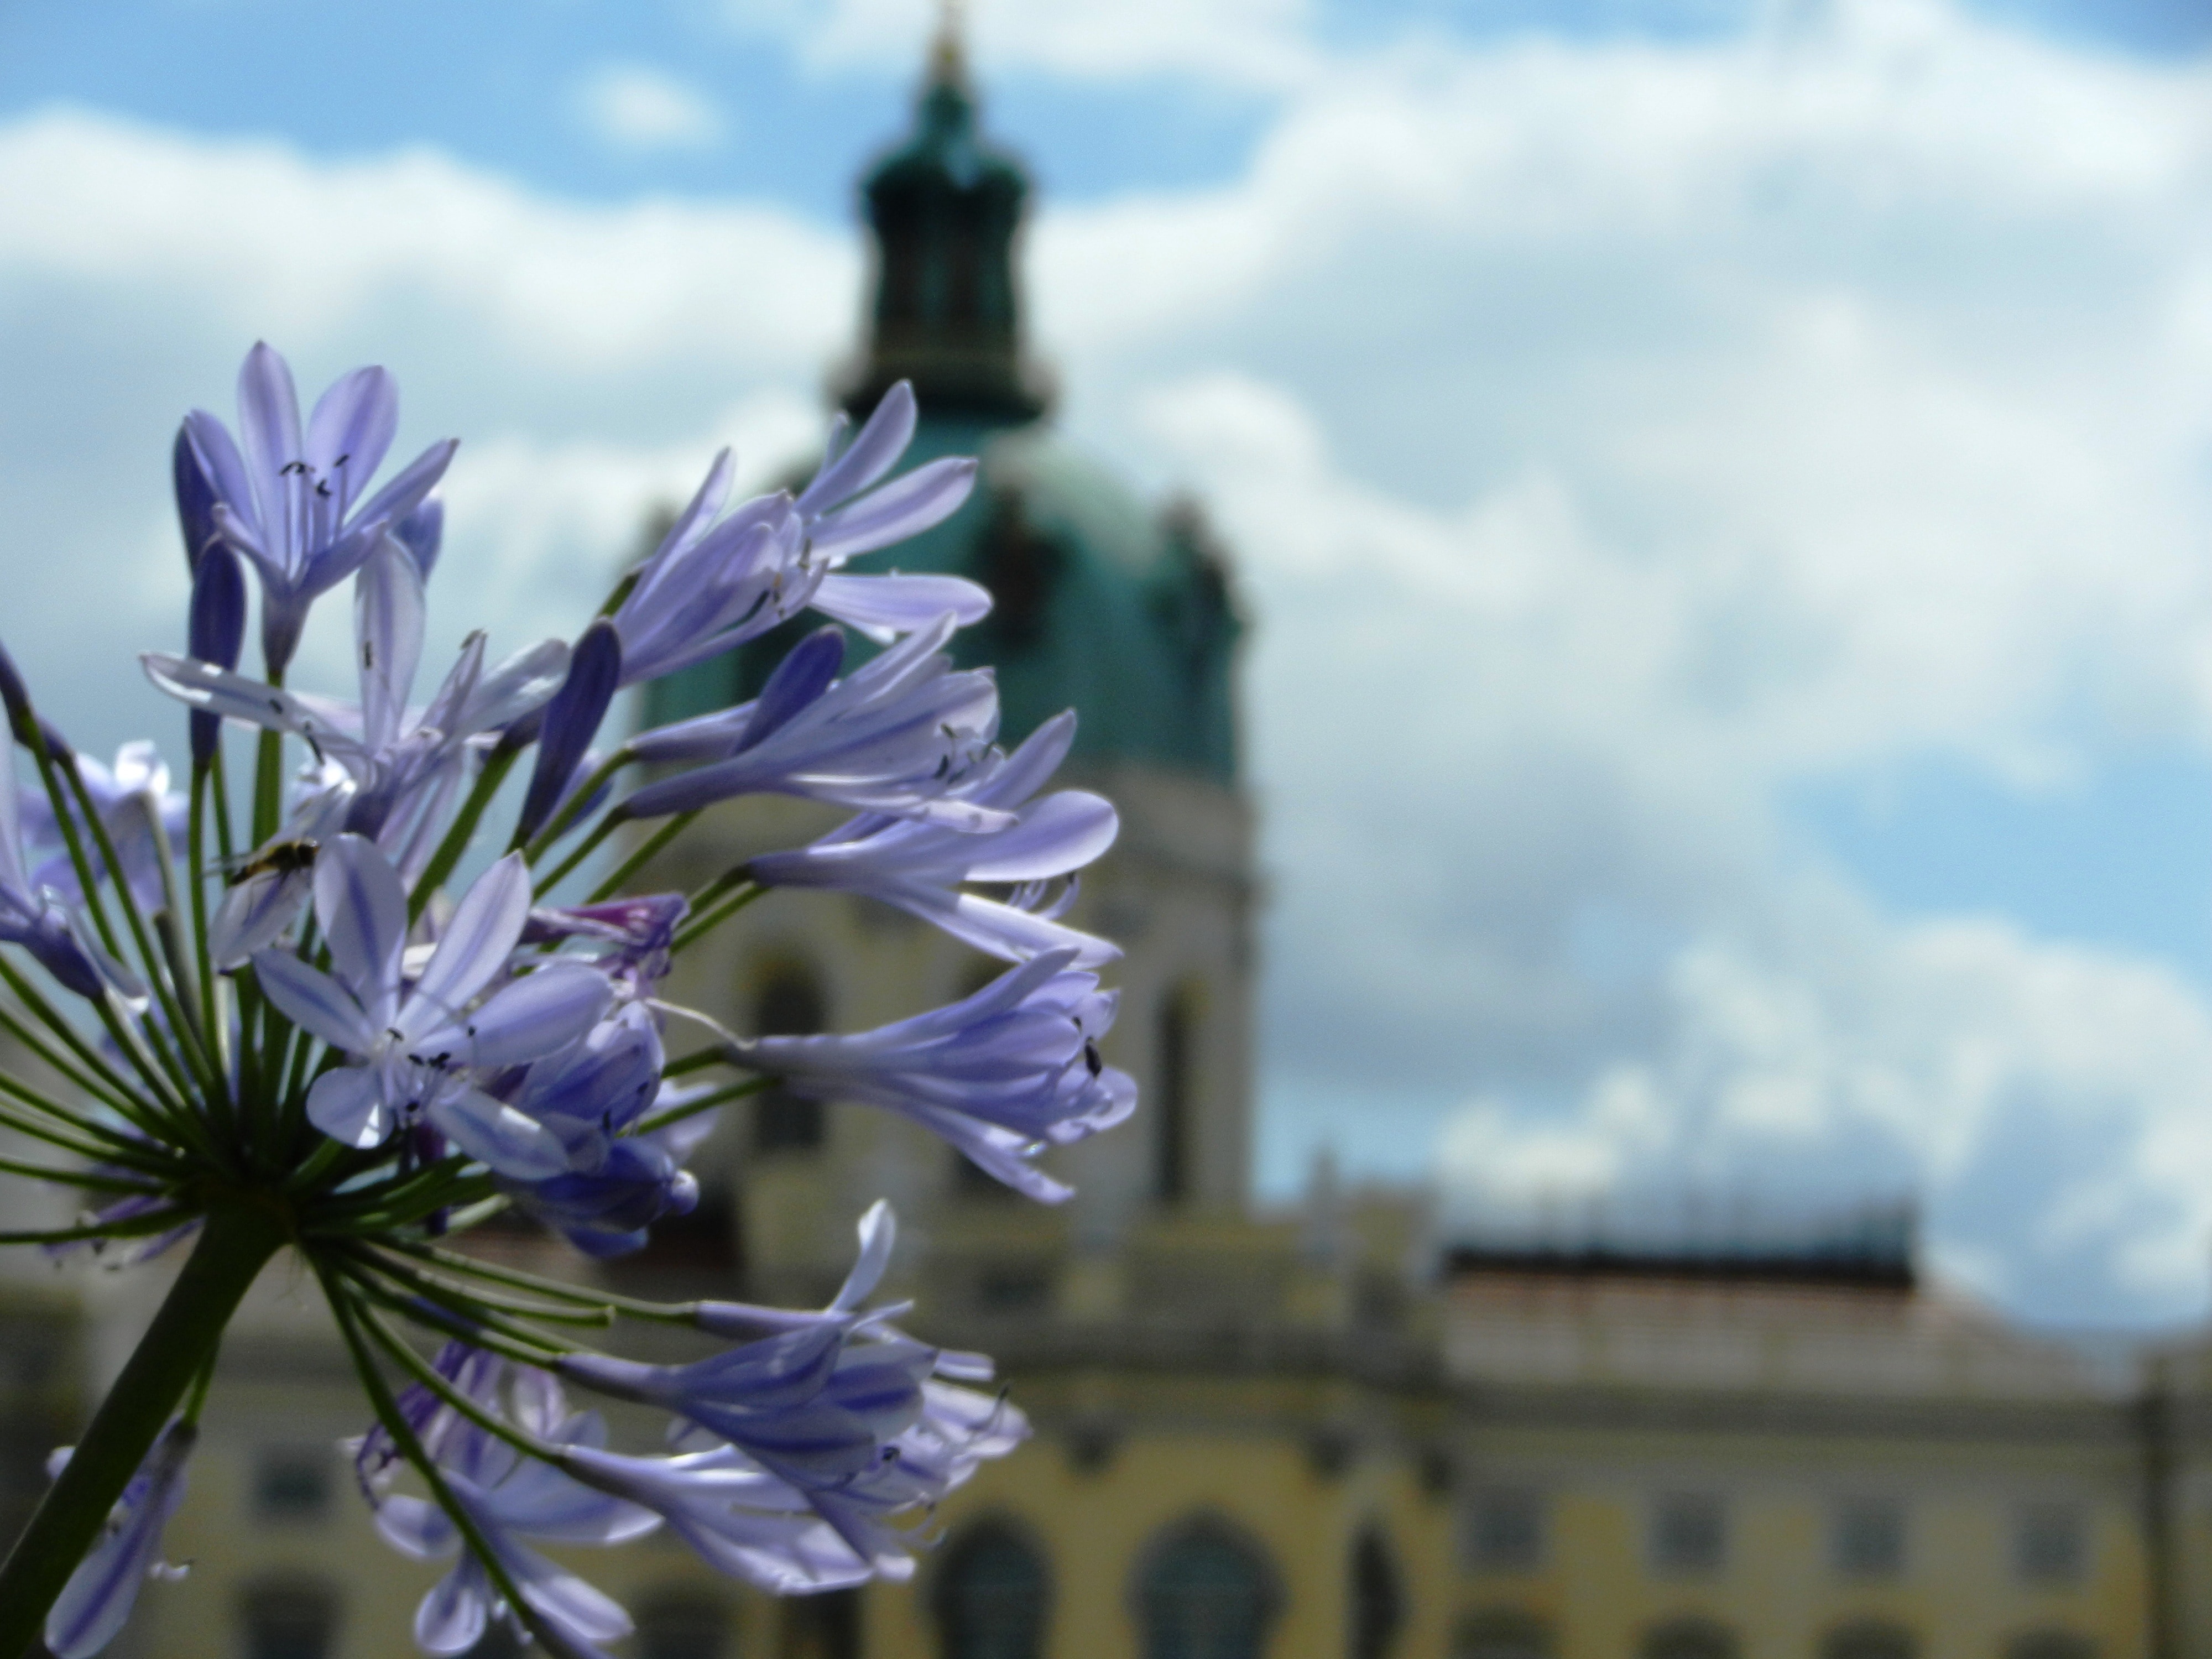 Sky, Monument, The Palace, Castle, flower, purple